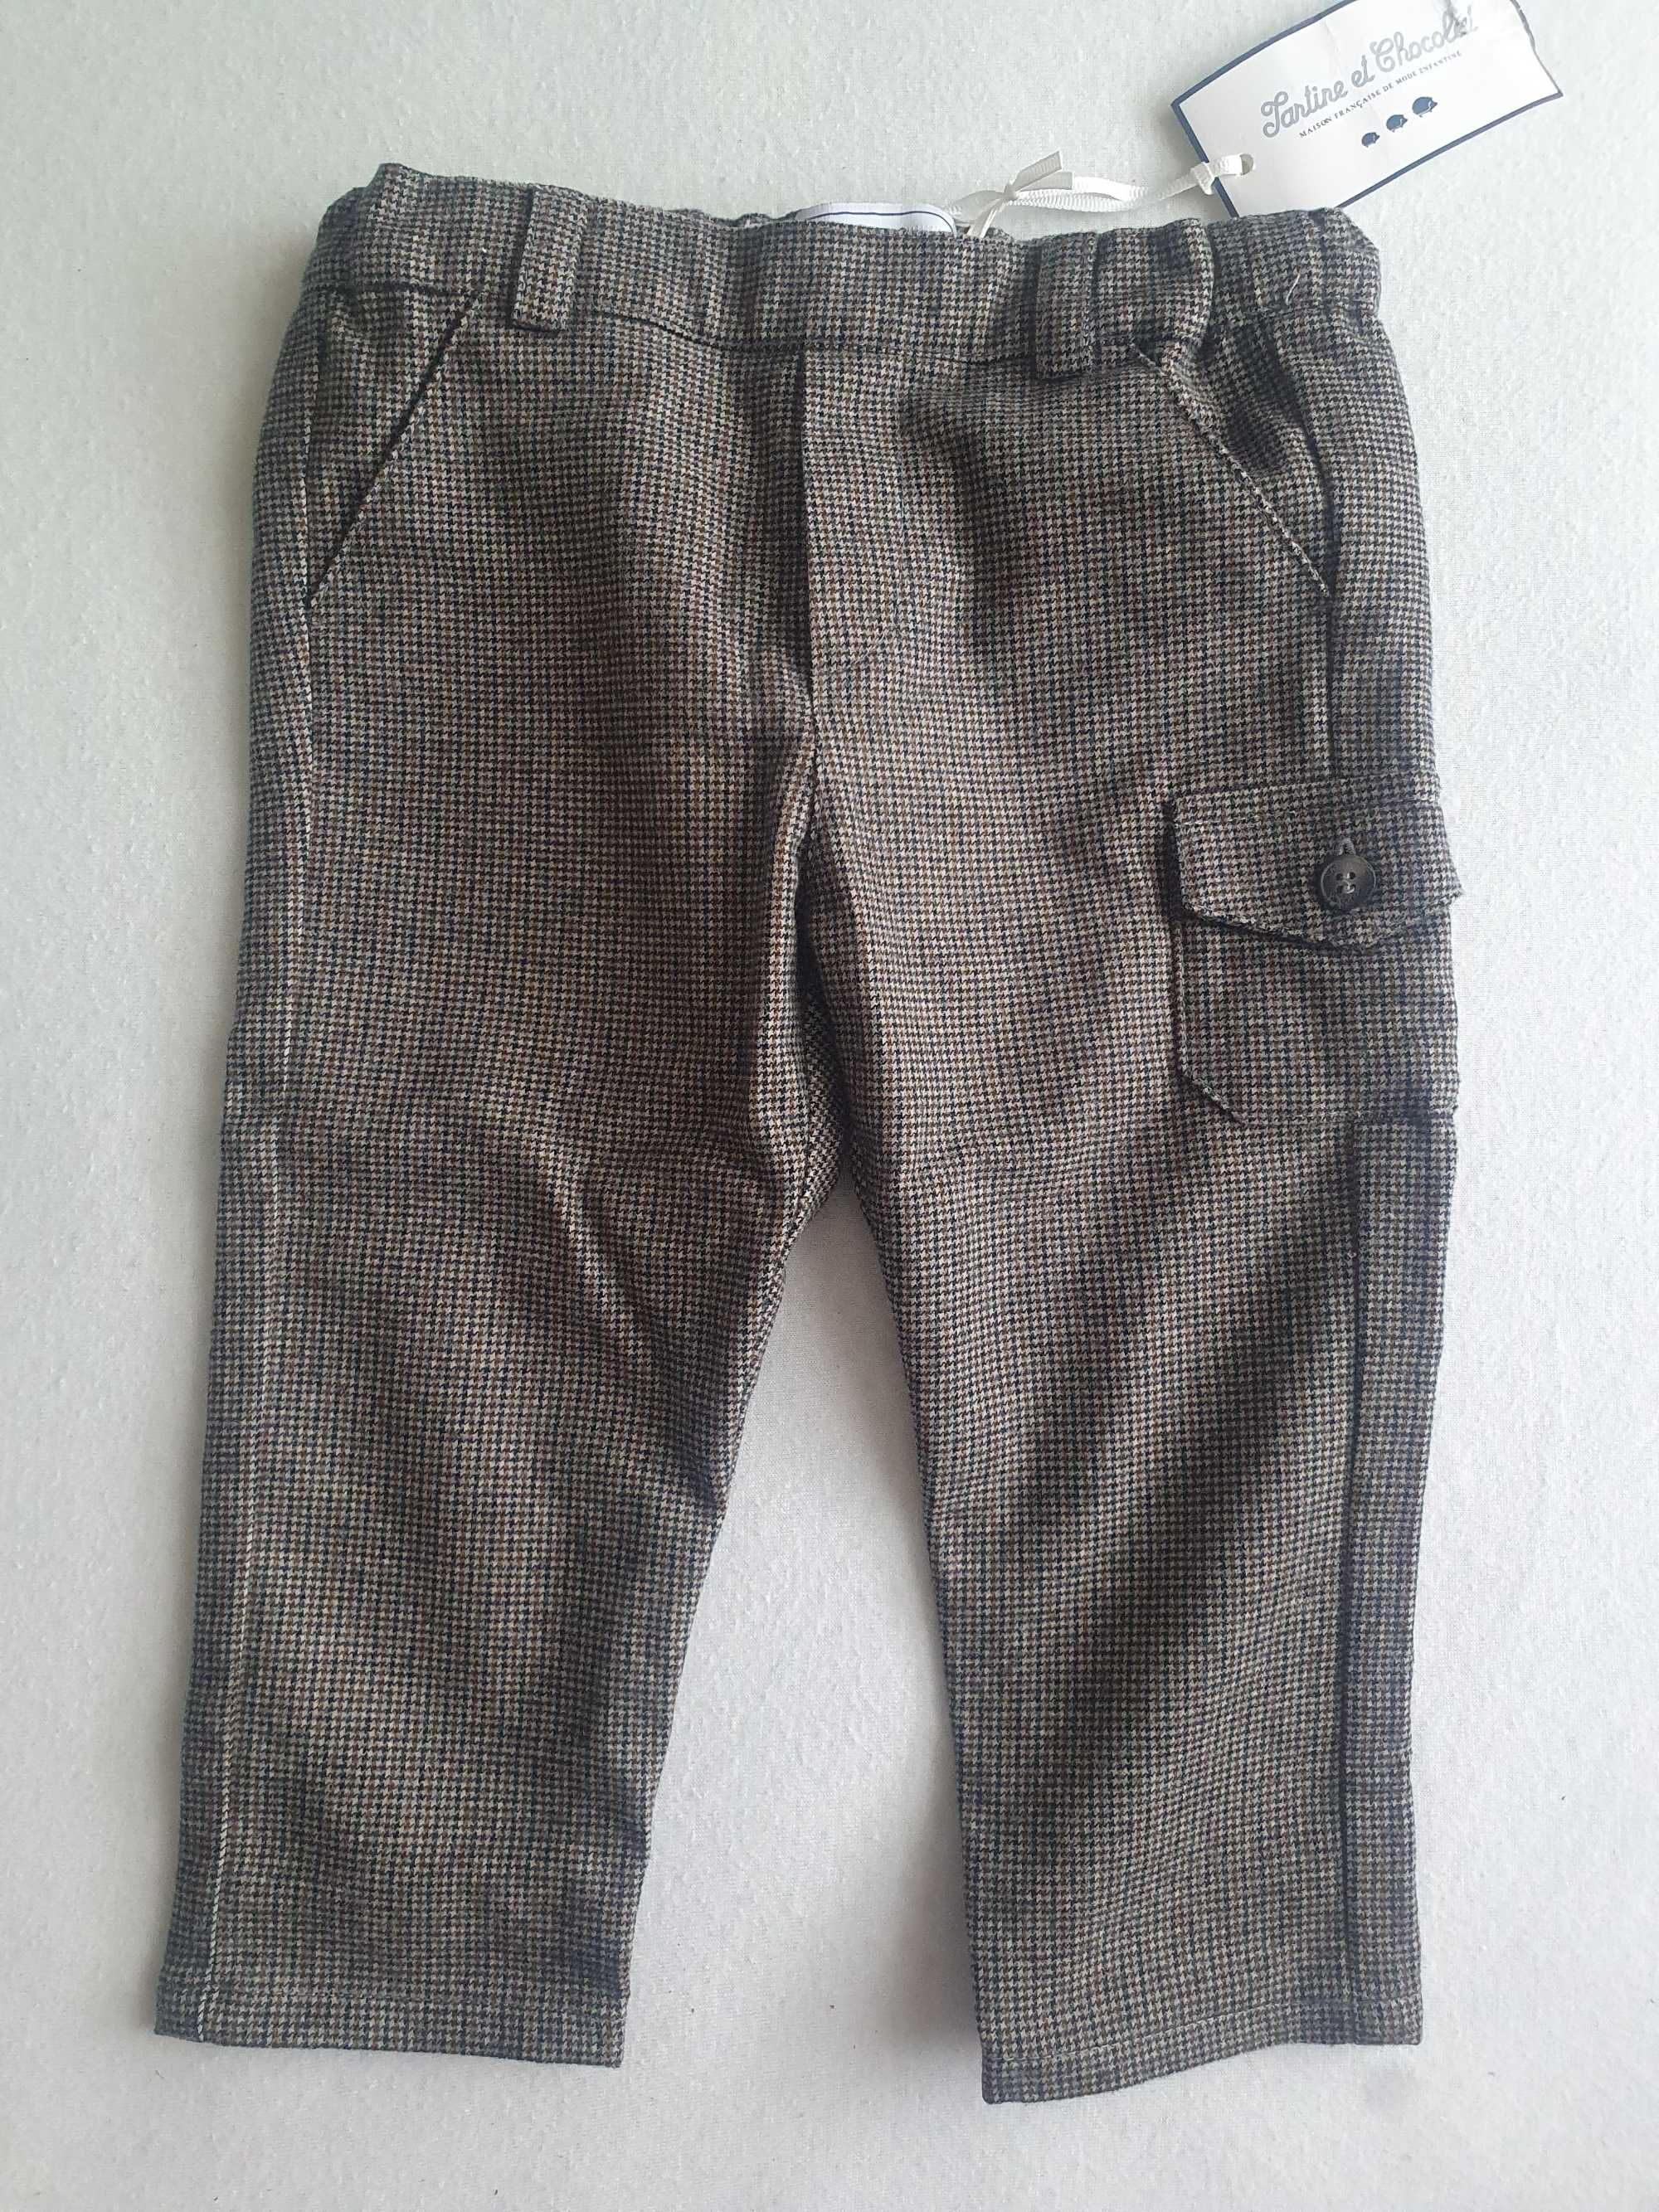 Eleganckie vintage spodnie, chłopiec. Rozmiar: 12 miesięcy